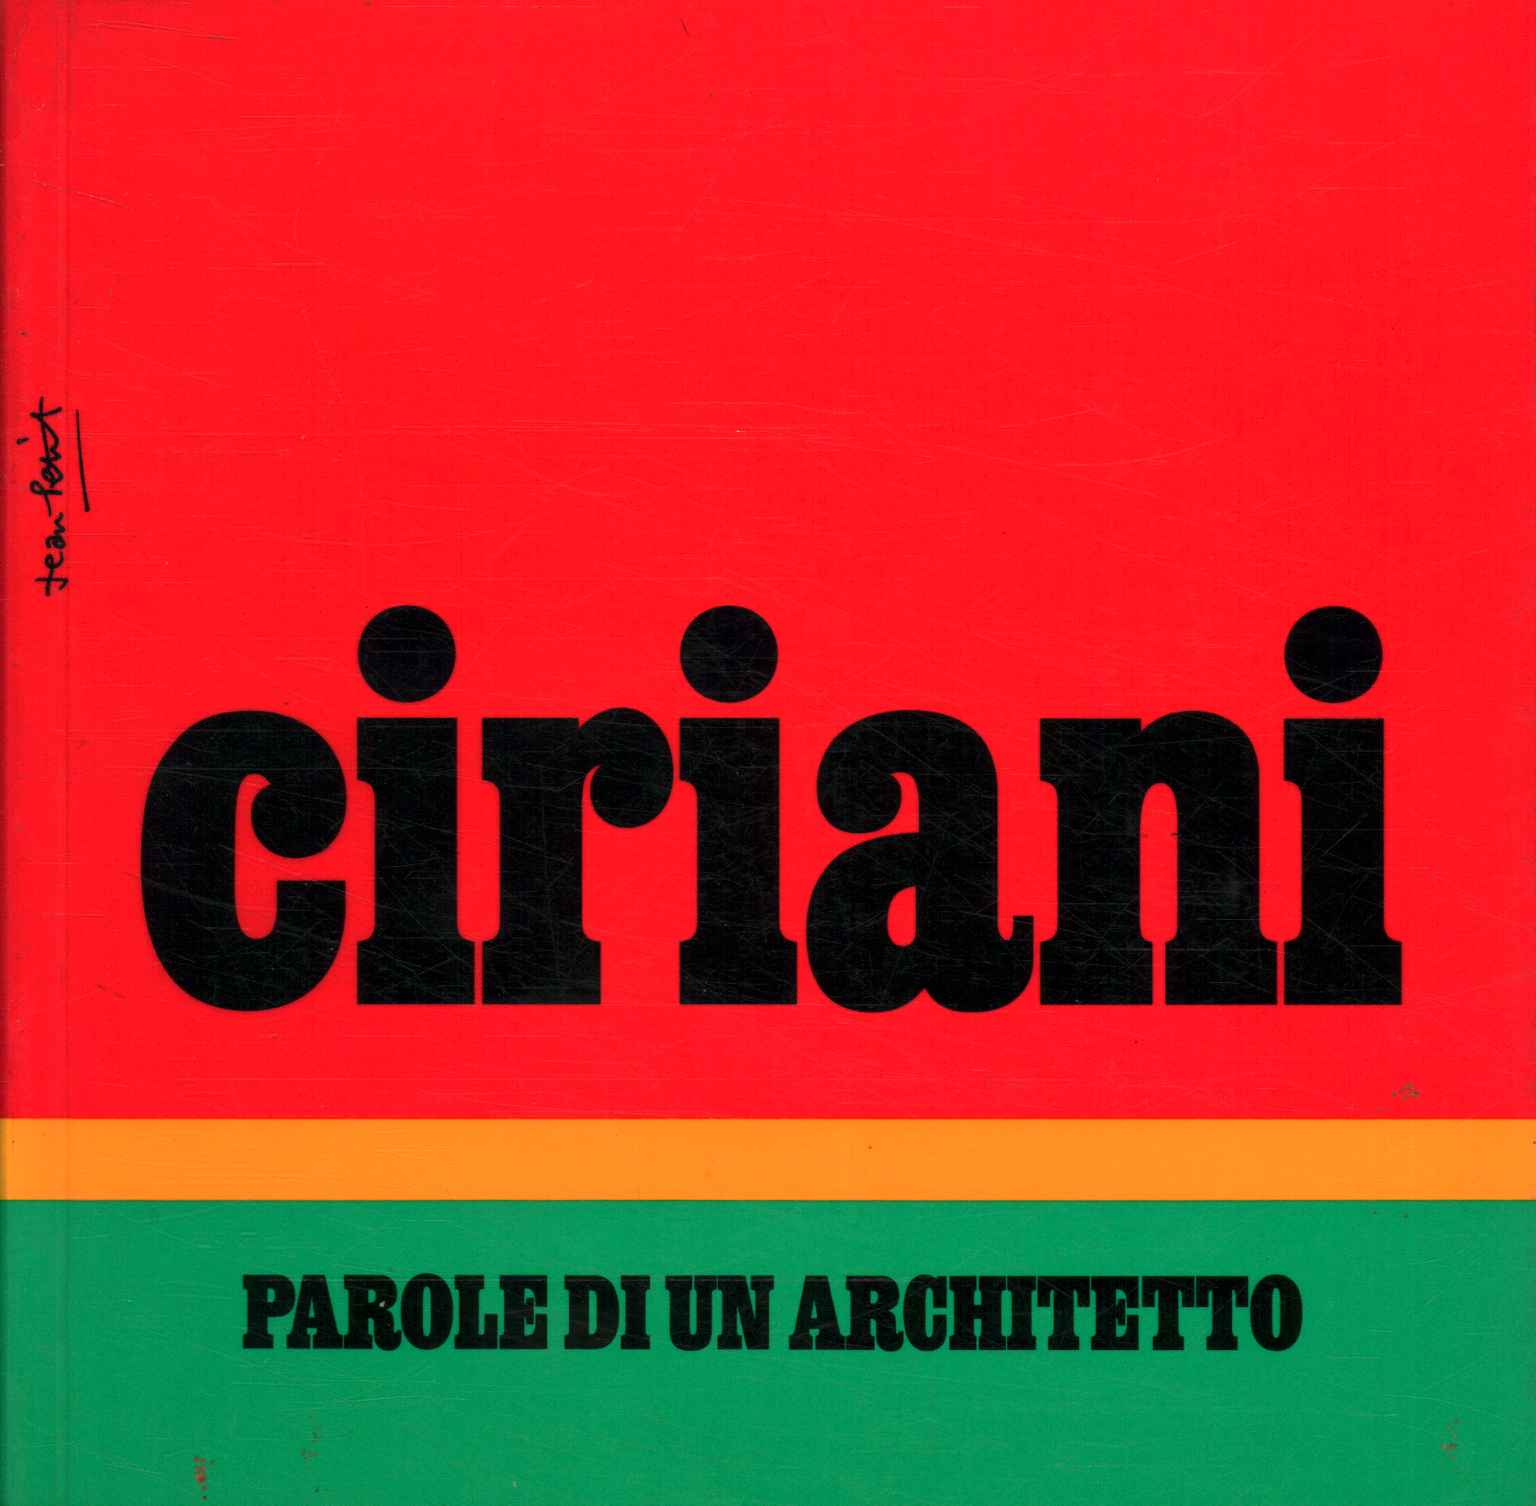 Ciriani. Worte eines Architekten